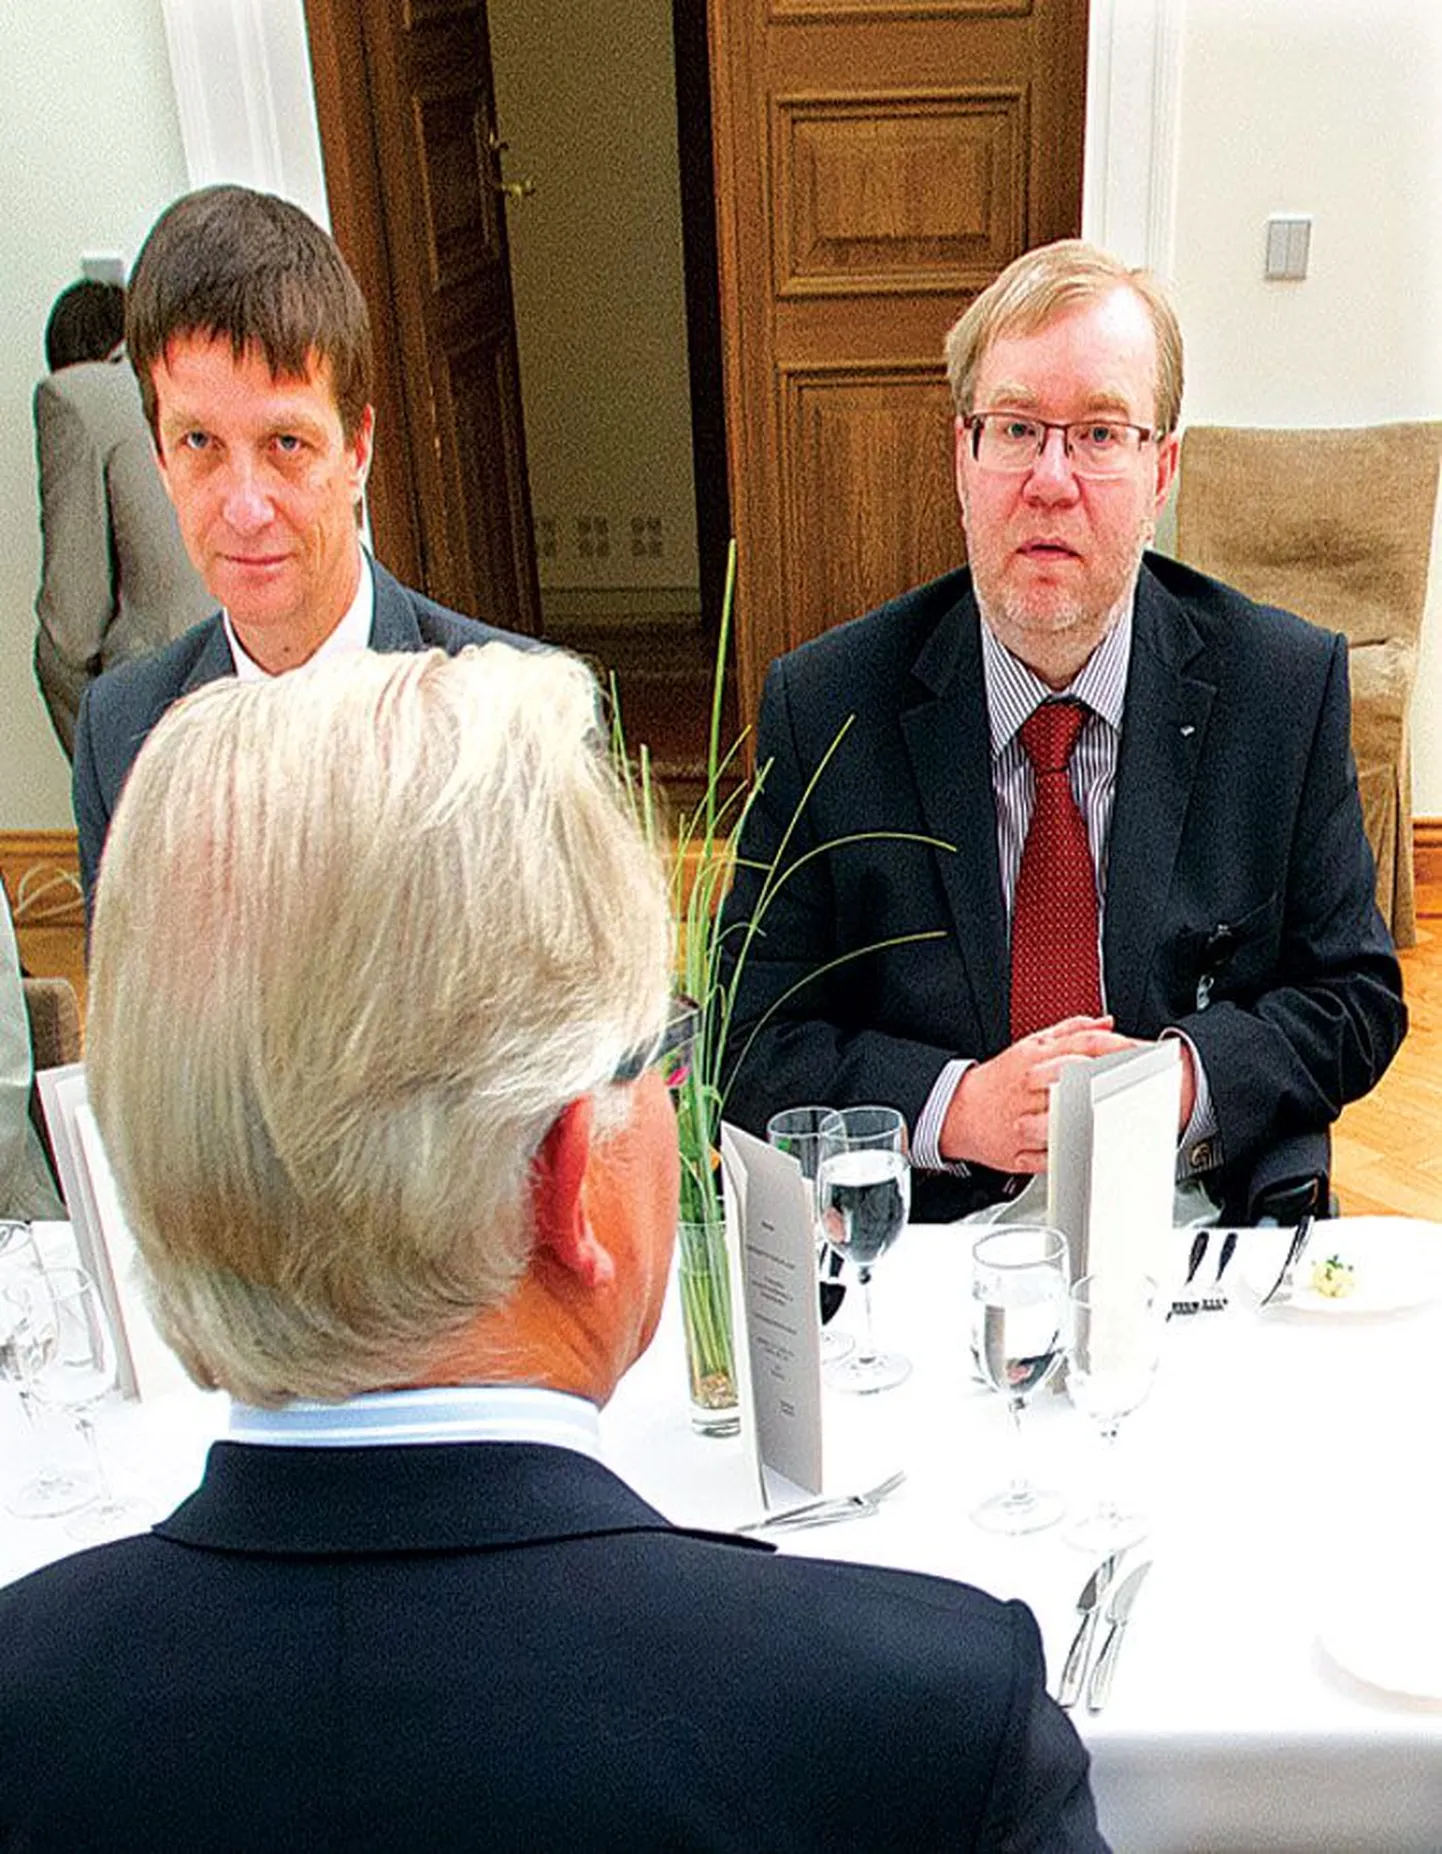 Март Лаар, который вчера вступил в должность председателя совета Банка Эстонии (справа), во вторник побывал на прощальном ужине своего предшественника Яана Мянника. Рядом с Лааром — президент Банка Эстонии Ардо Ханссон.